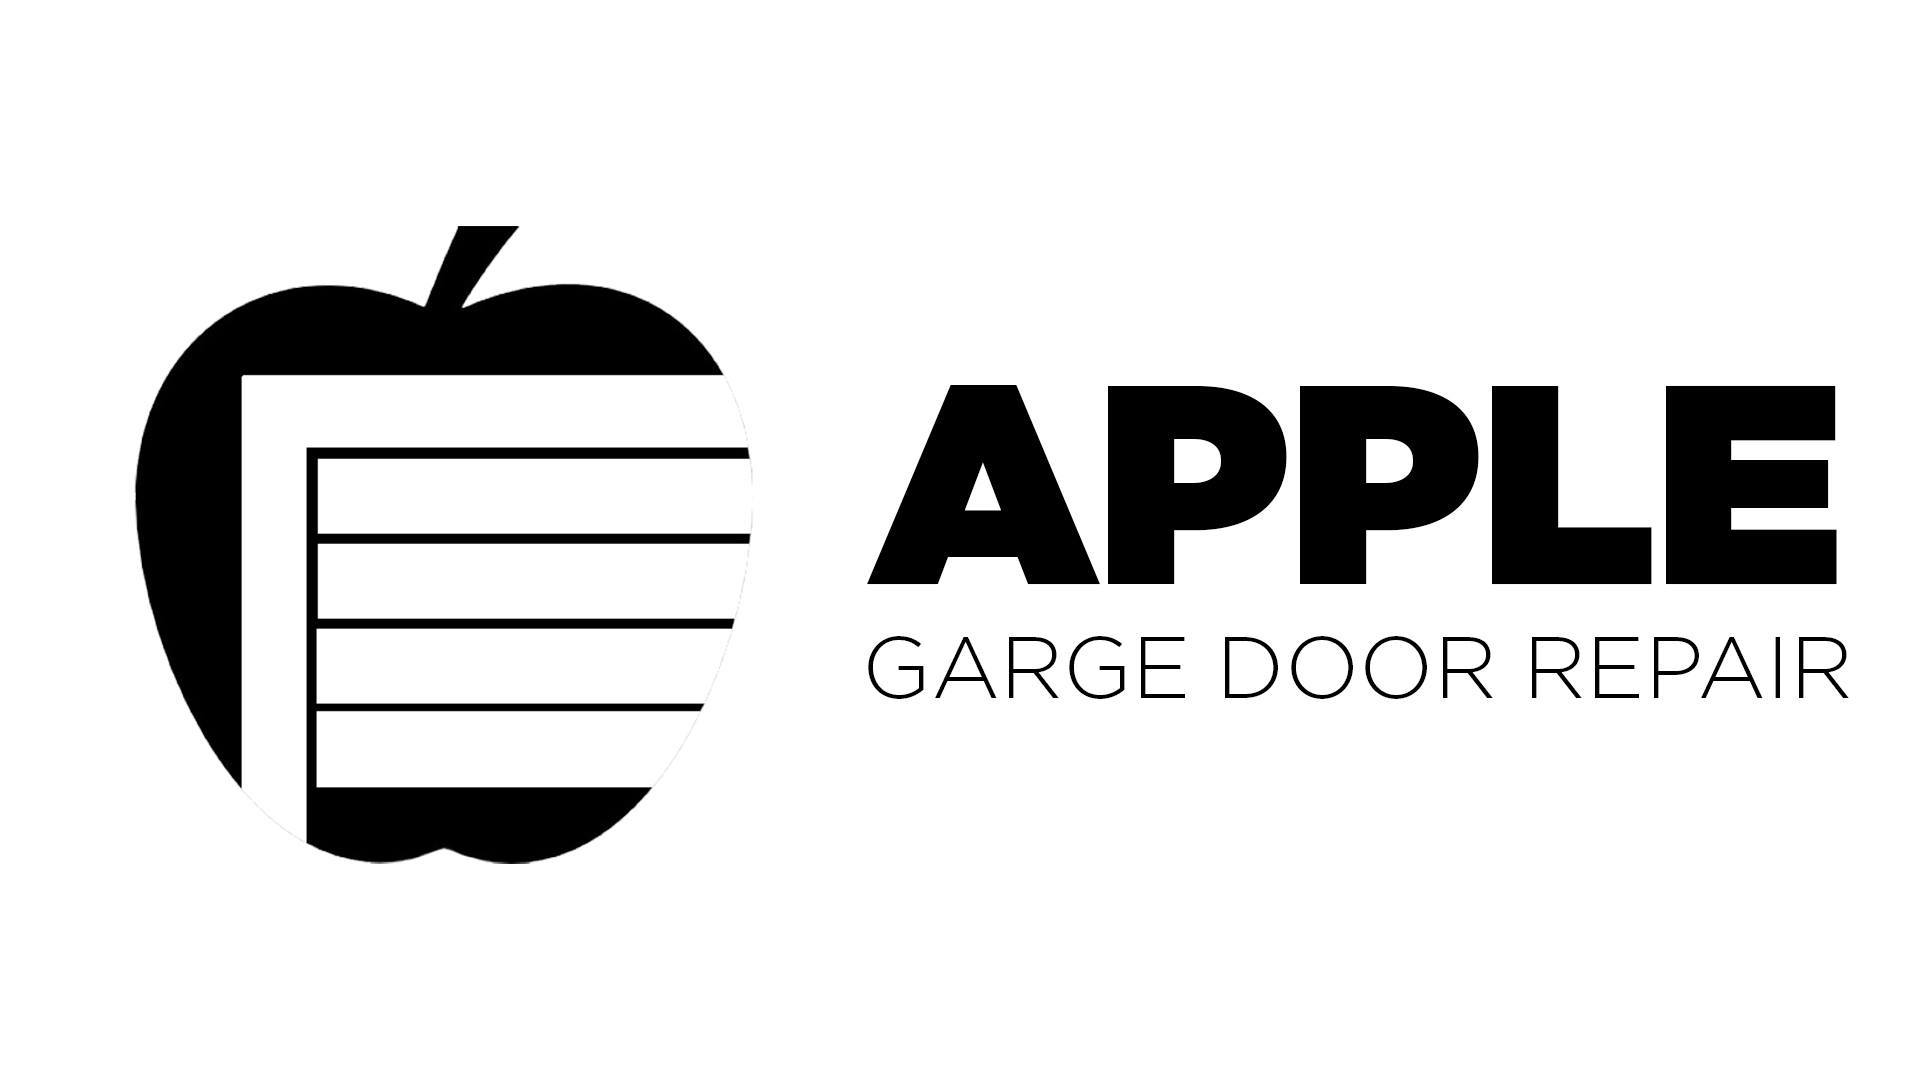 Business logo of Apple Garage Door Repair